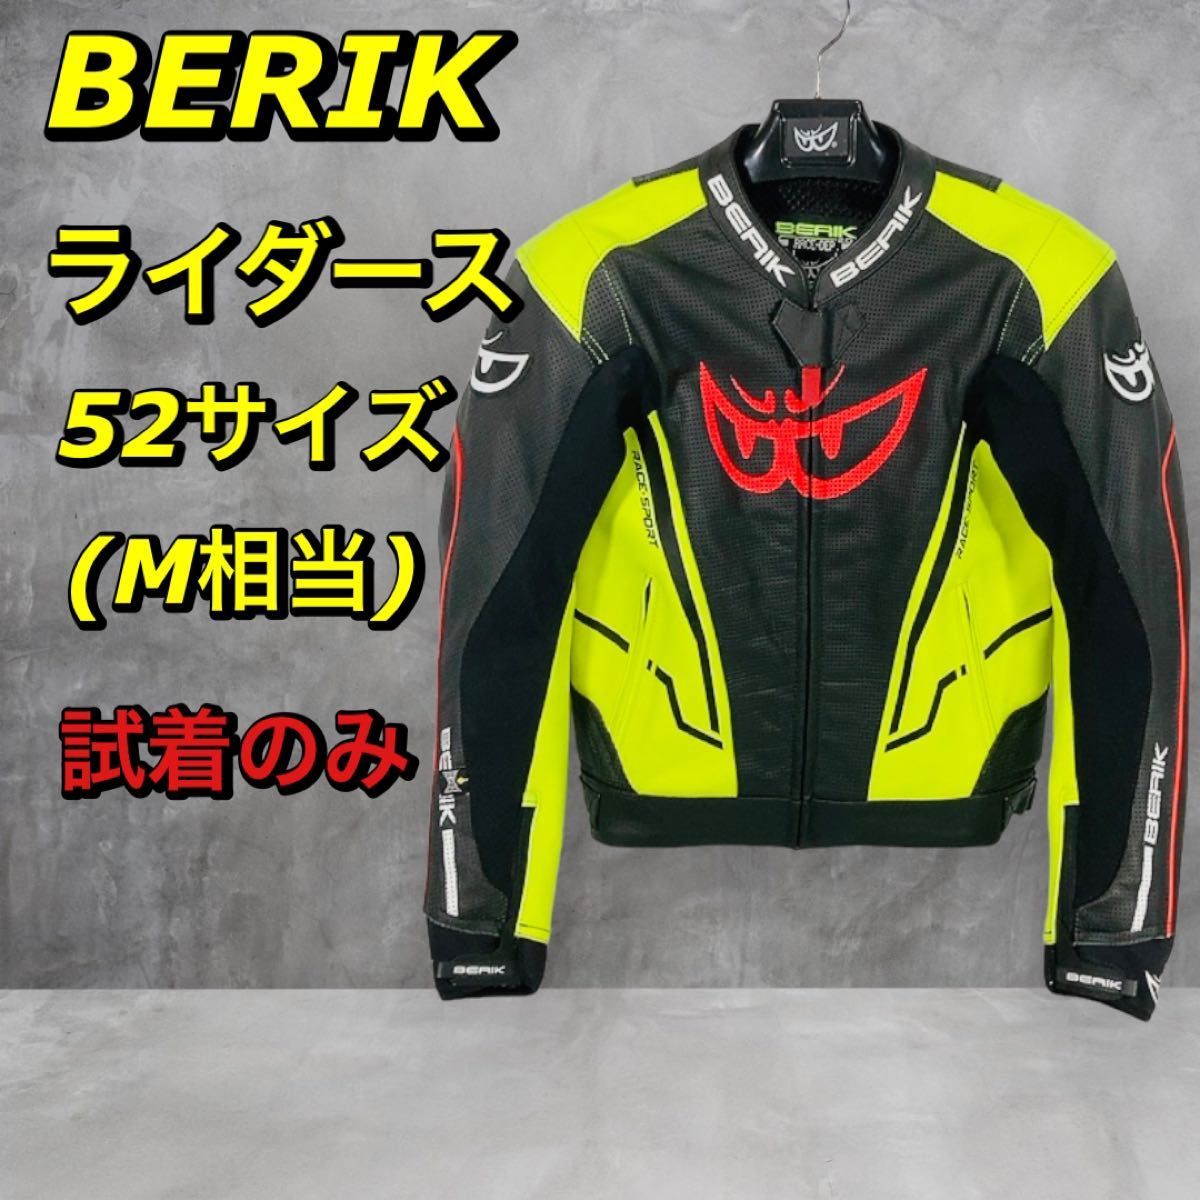 BERIK ベリック レザージャケット ライダース ジャケット サーキット レーサー セパレート メンズ 52 / M 極美品